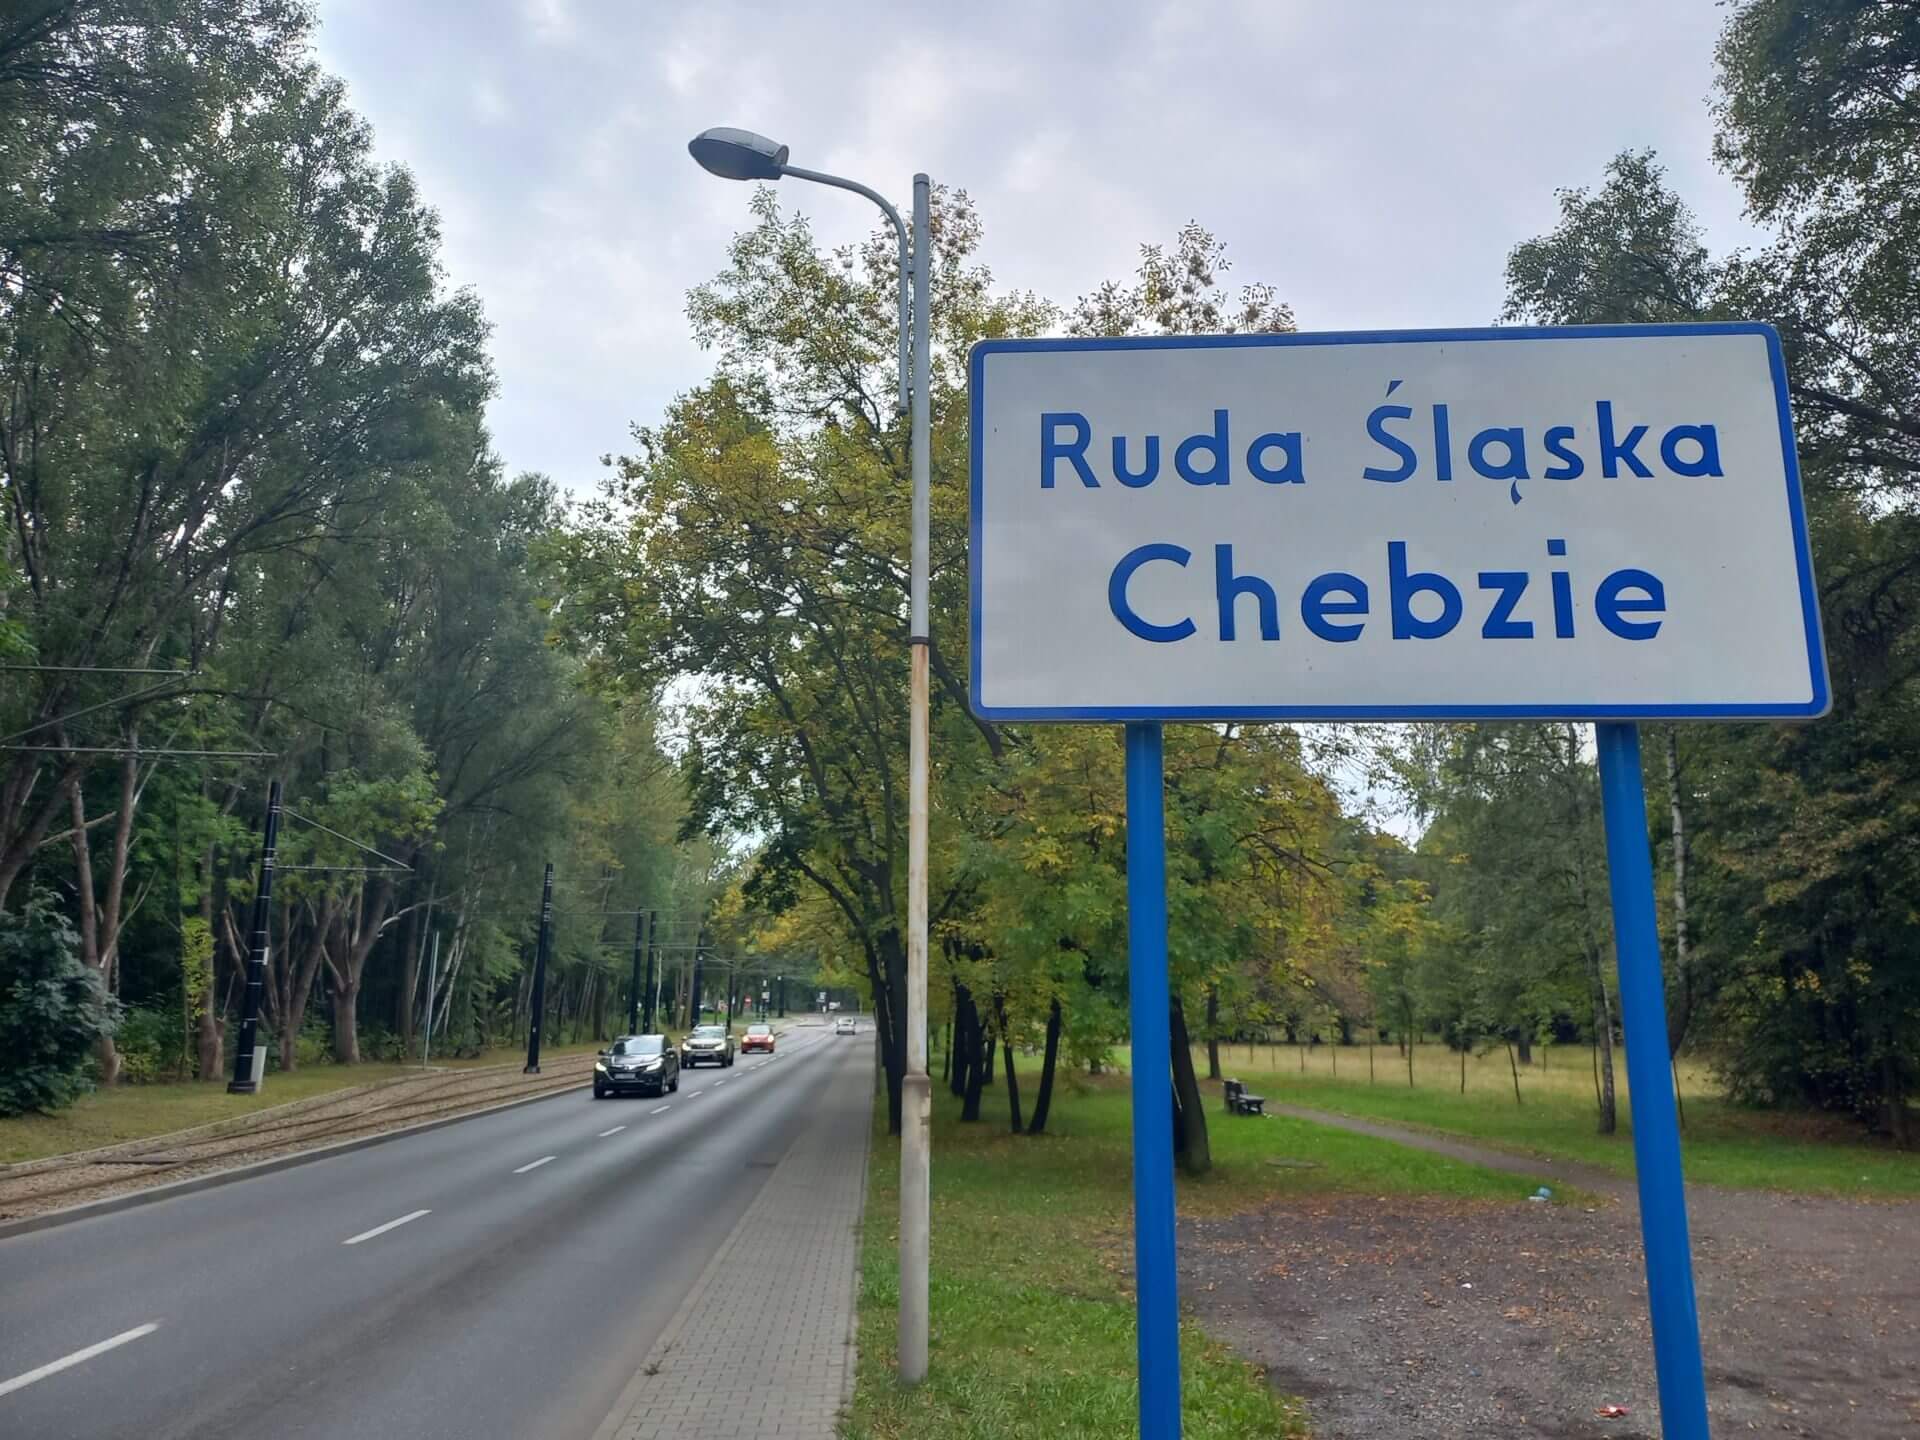 Ruda Śląska Chebzie